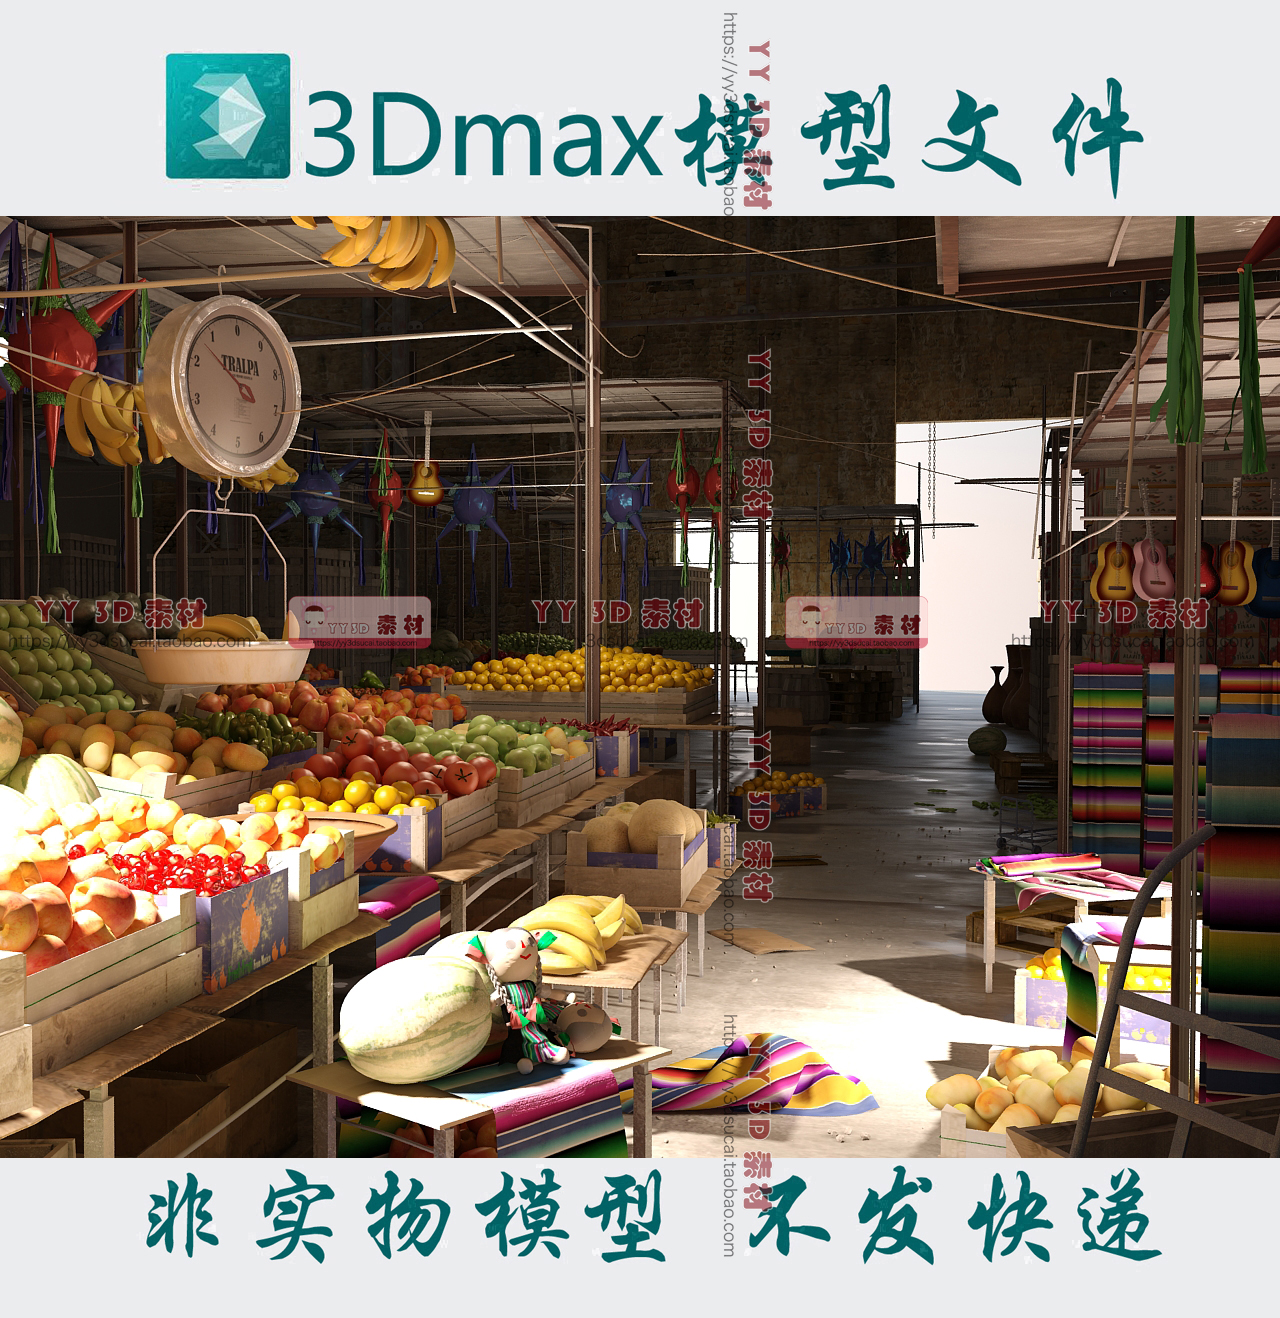 农贸市场3dmax场景市场一角3d模型水果摊水果市场max模型集市3d